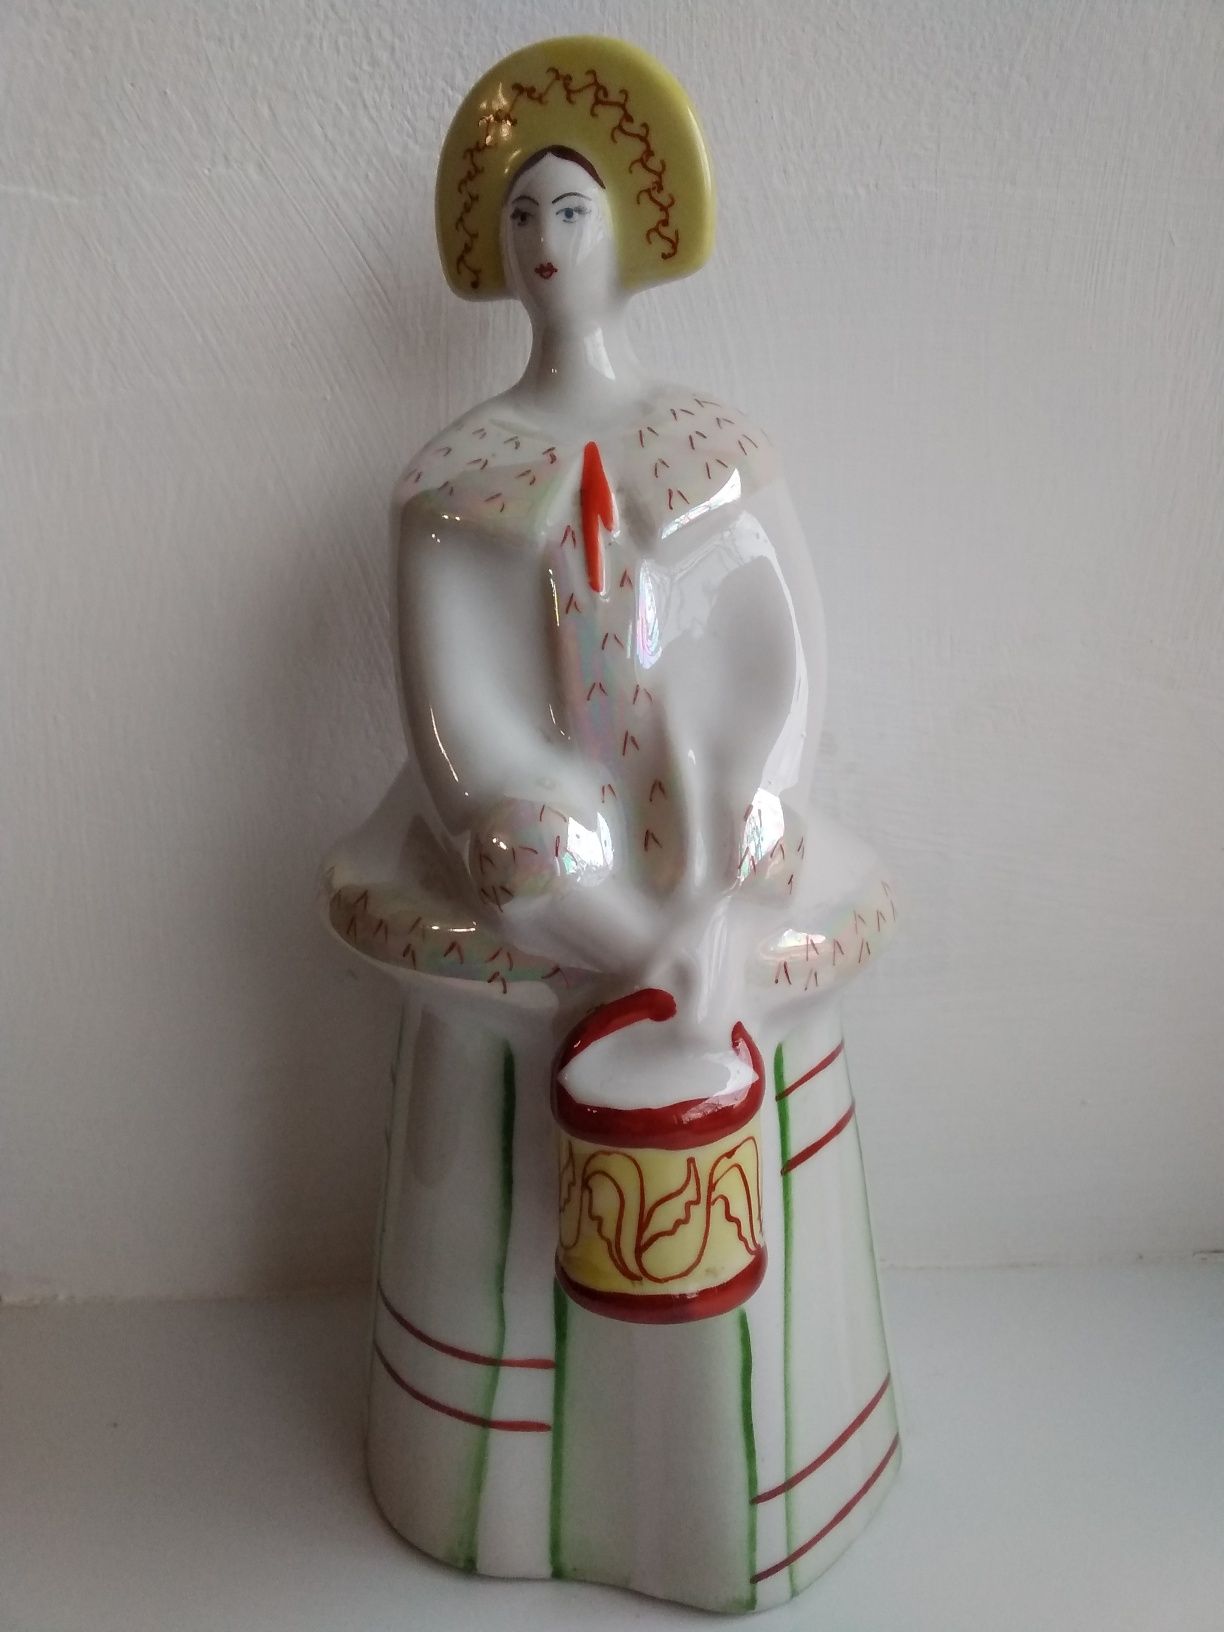 Фарфоровая статуэткa "Девушка в кокошнике с ведром"